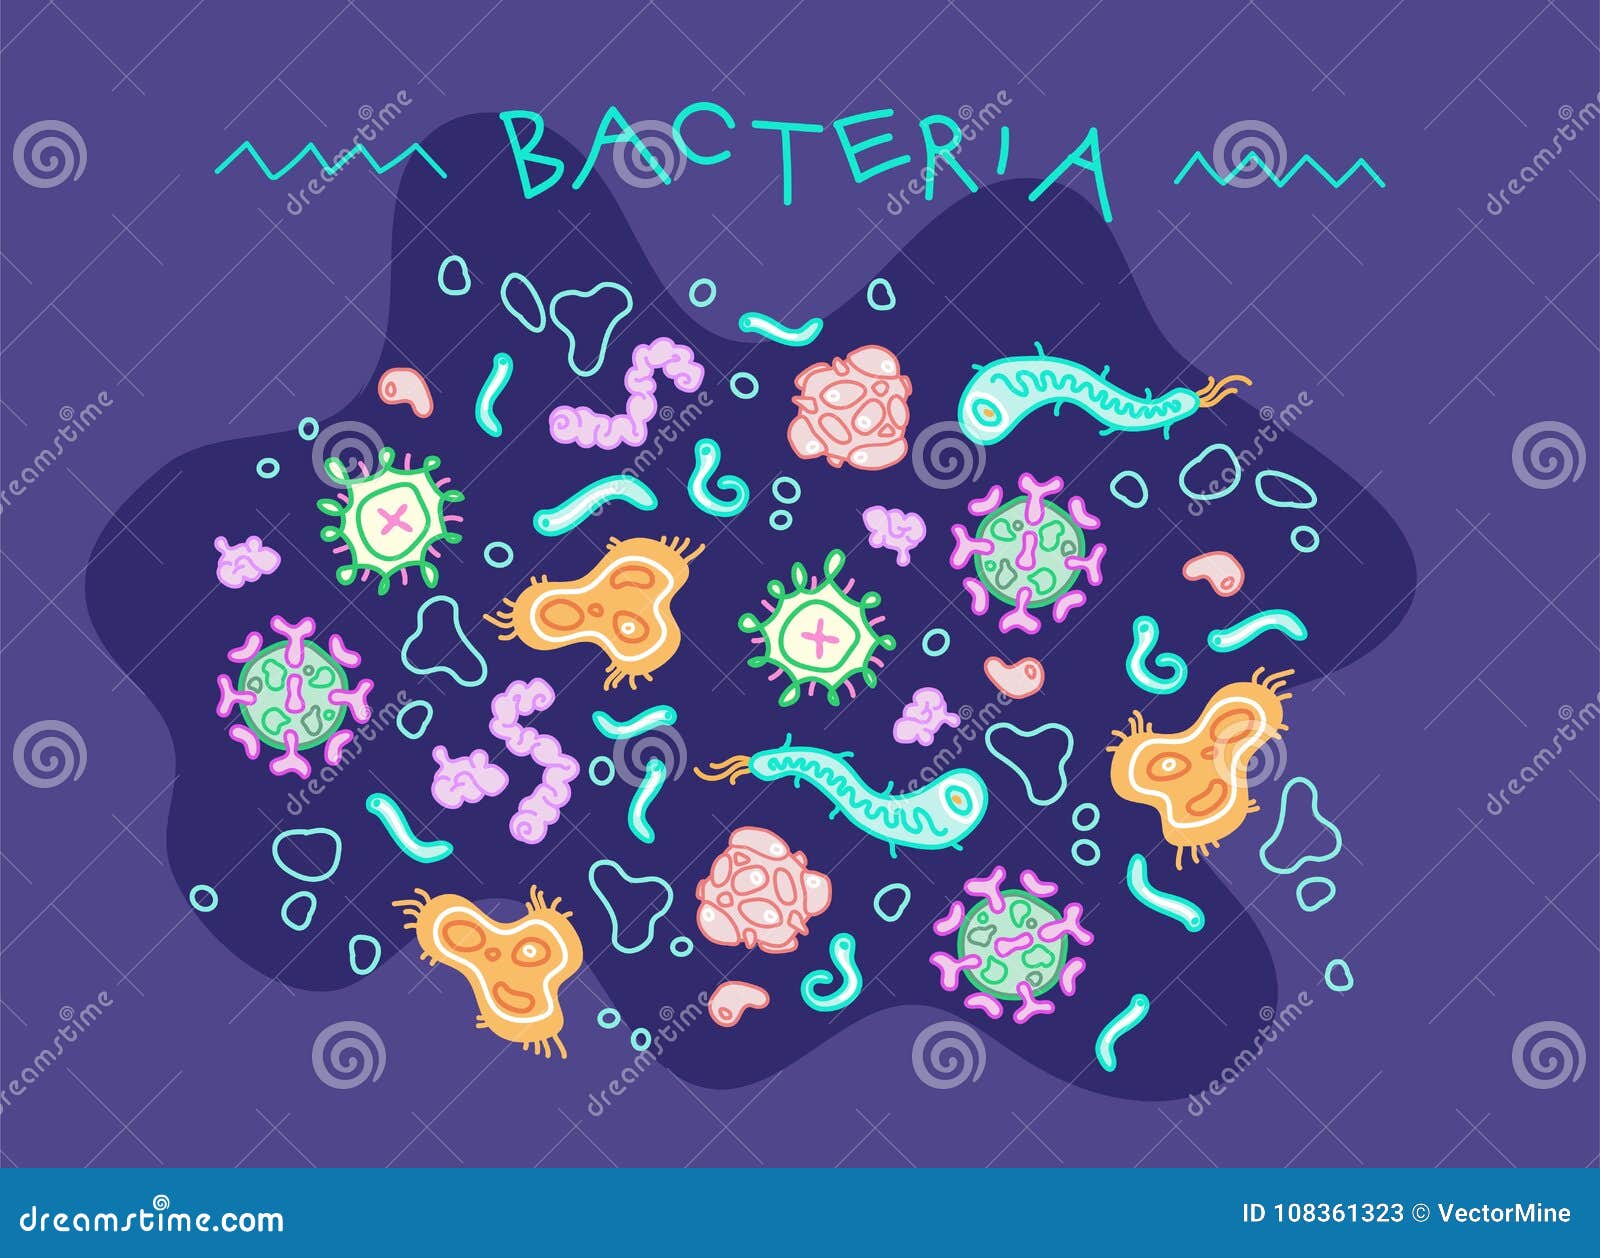 bacteria microorganisms 